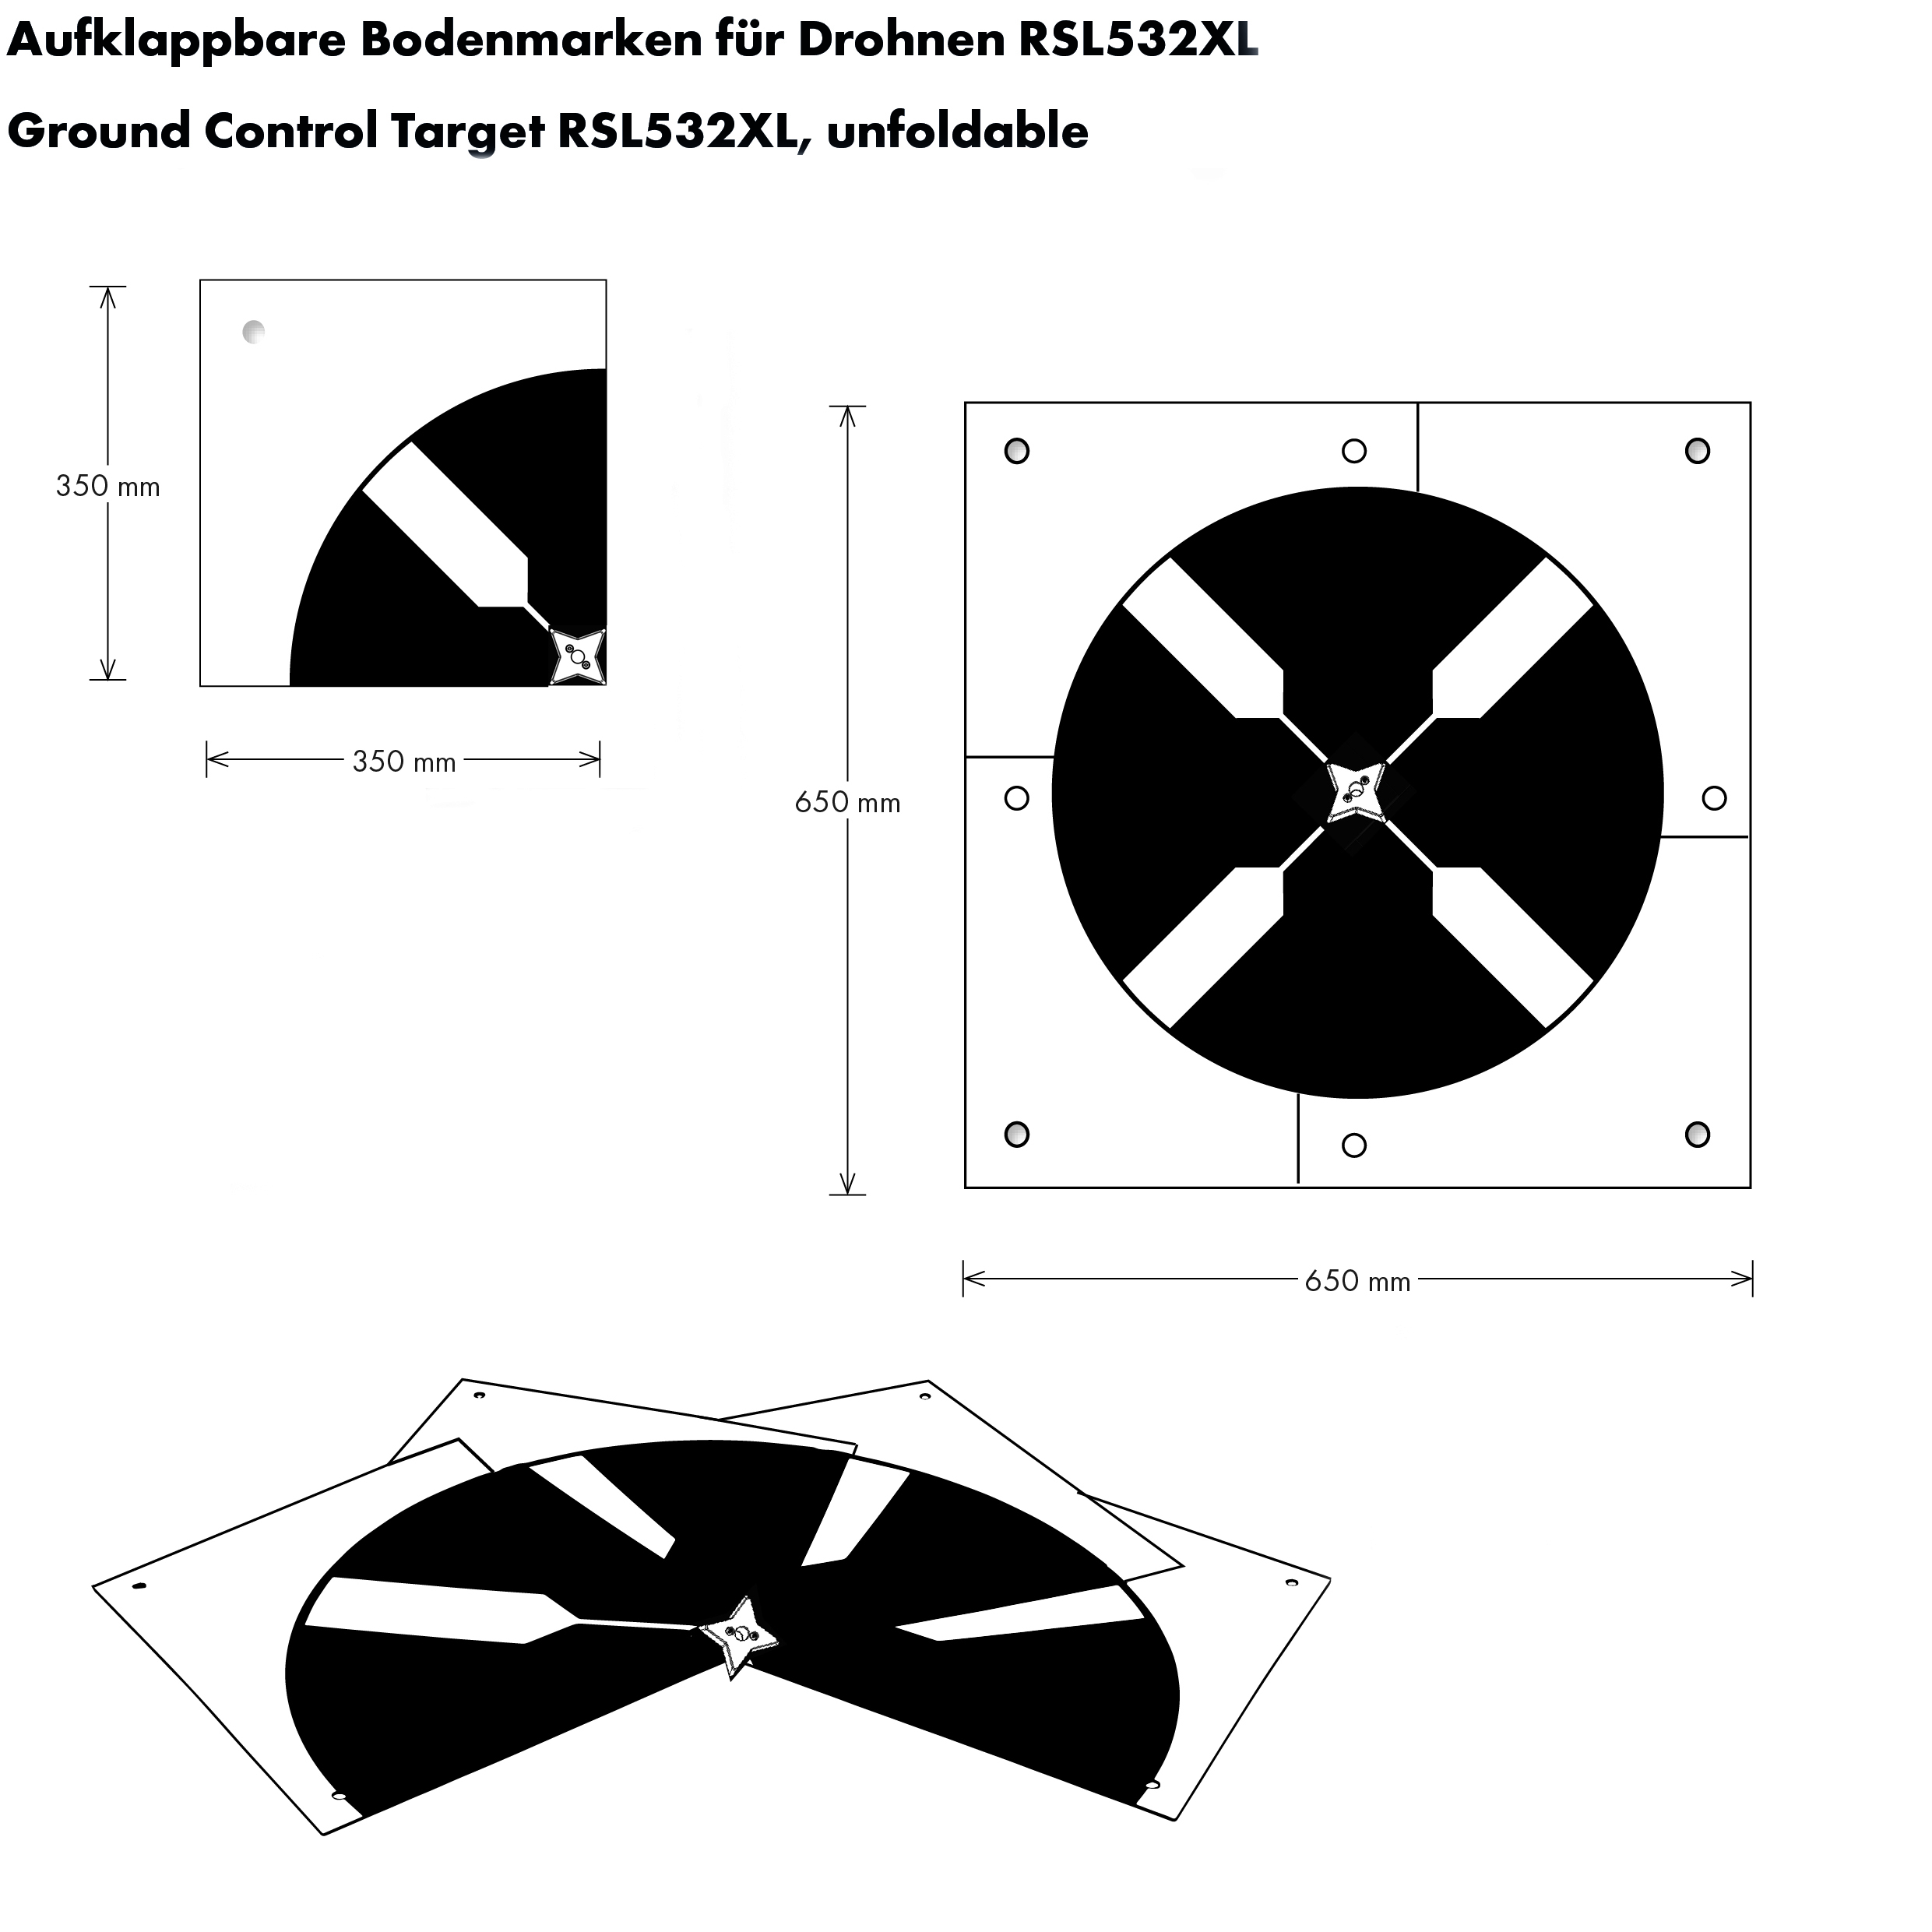 Aufklappbare Bodenmarke für Drohnen RSL532XL von Rothbucher Systeme